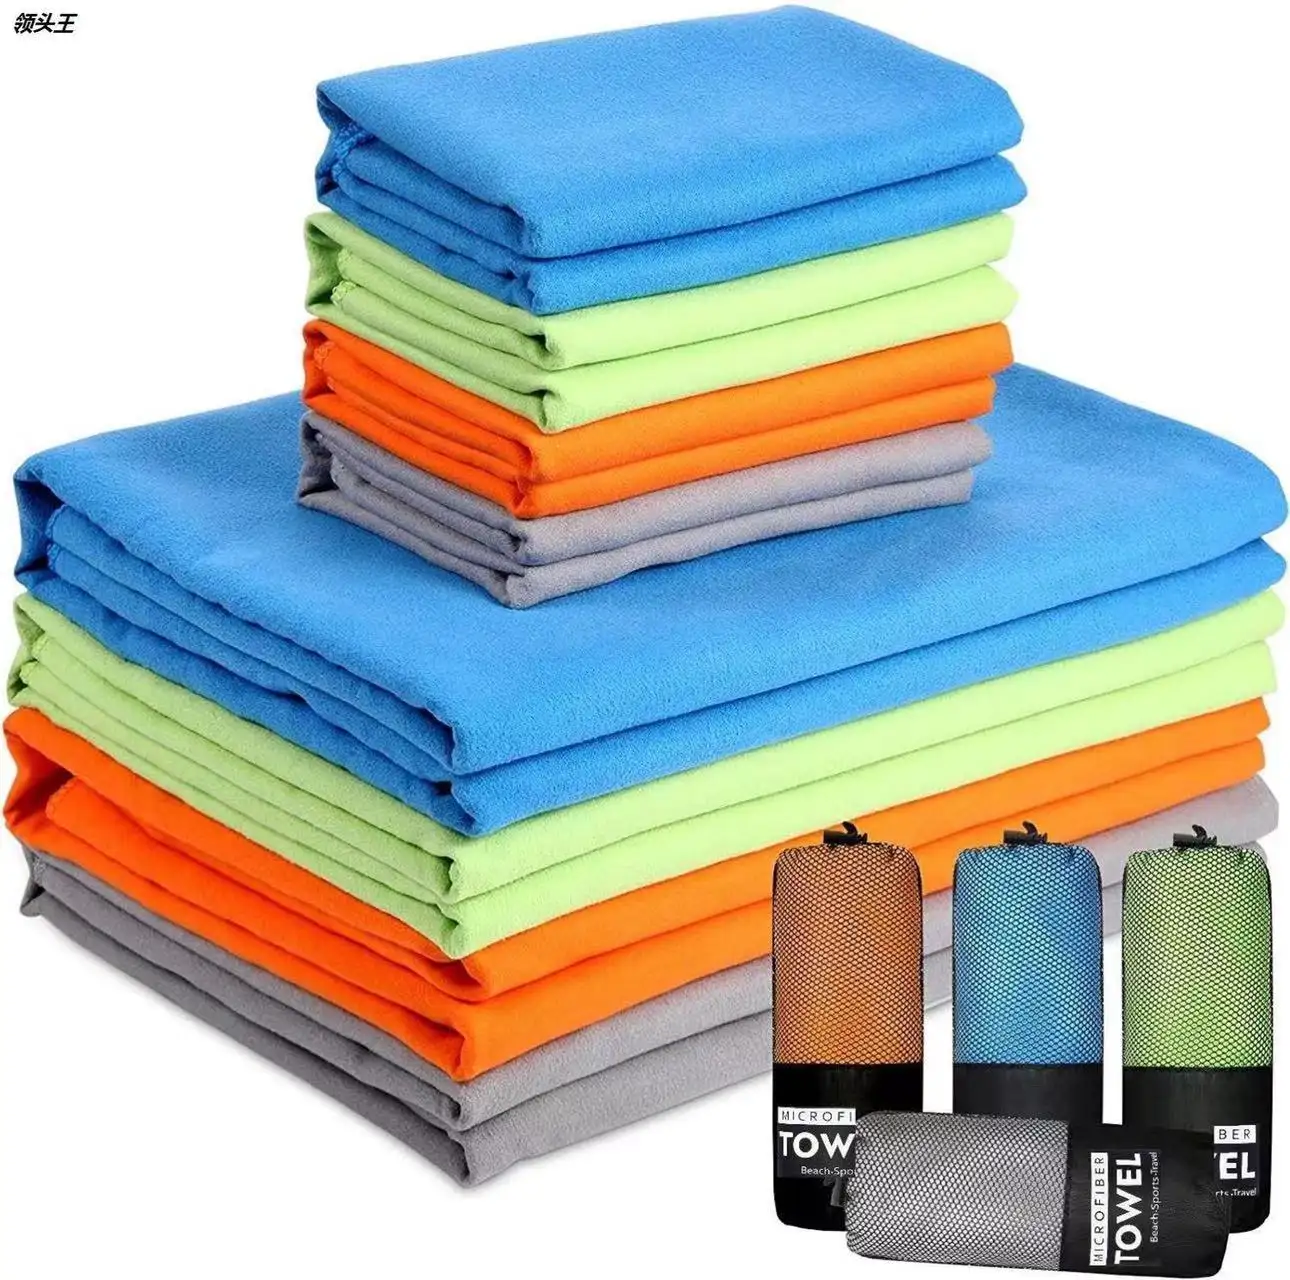 उच्च गुणवत्ता वाले कस्टम लोगो शुद्ध रंग दो तरफा तौलिया आकार 80*150 त्वरित सूखी माइक्रोफाइबर मुद्रण समुद्र तट तौलिया